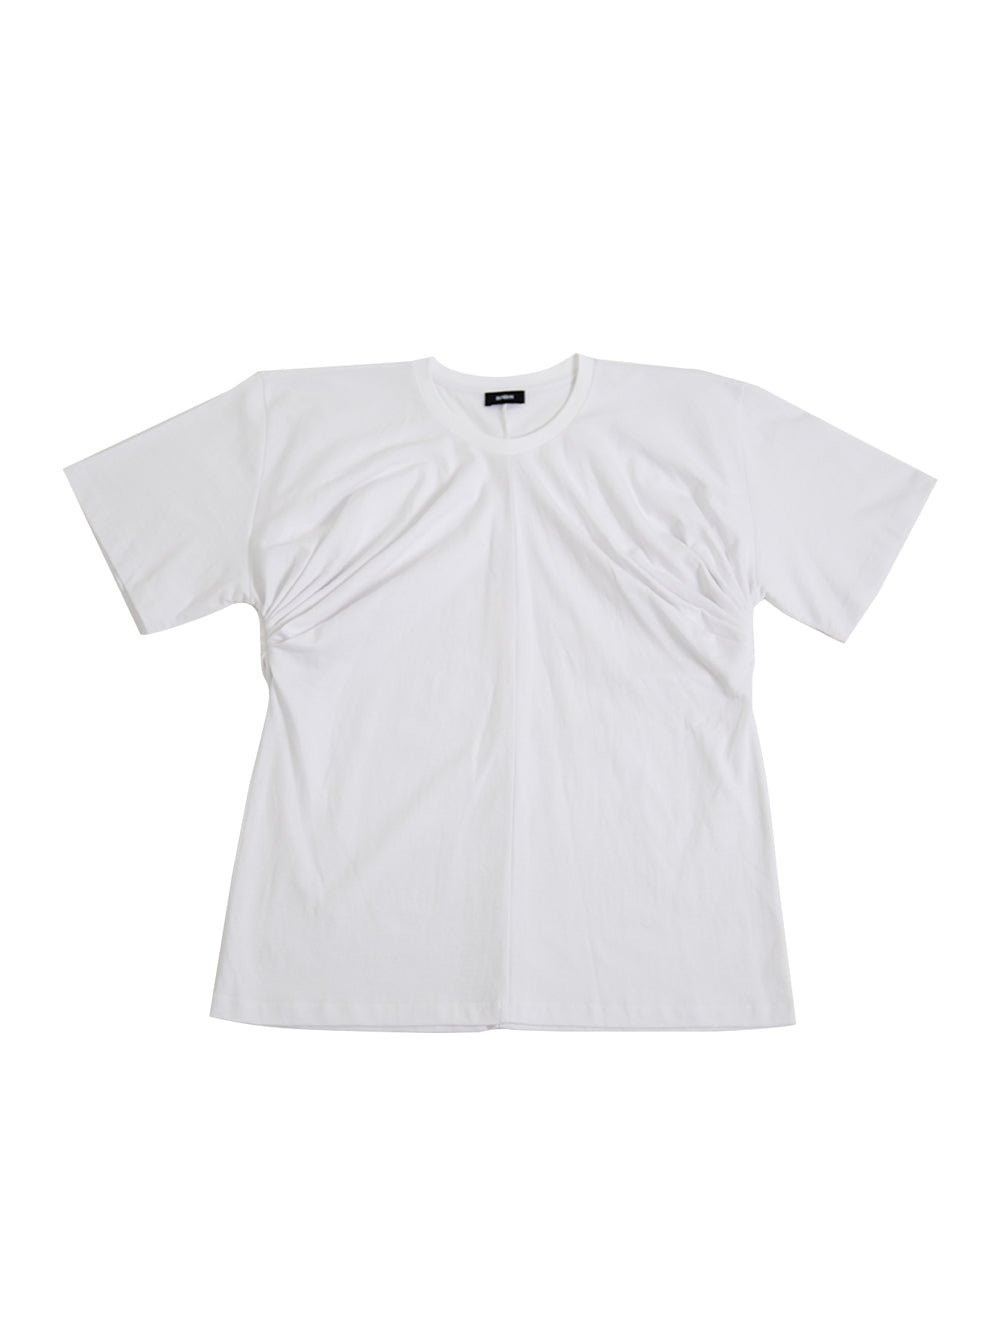 Arm-Draped Tshirt White